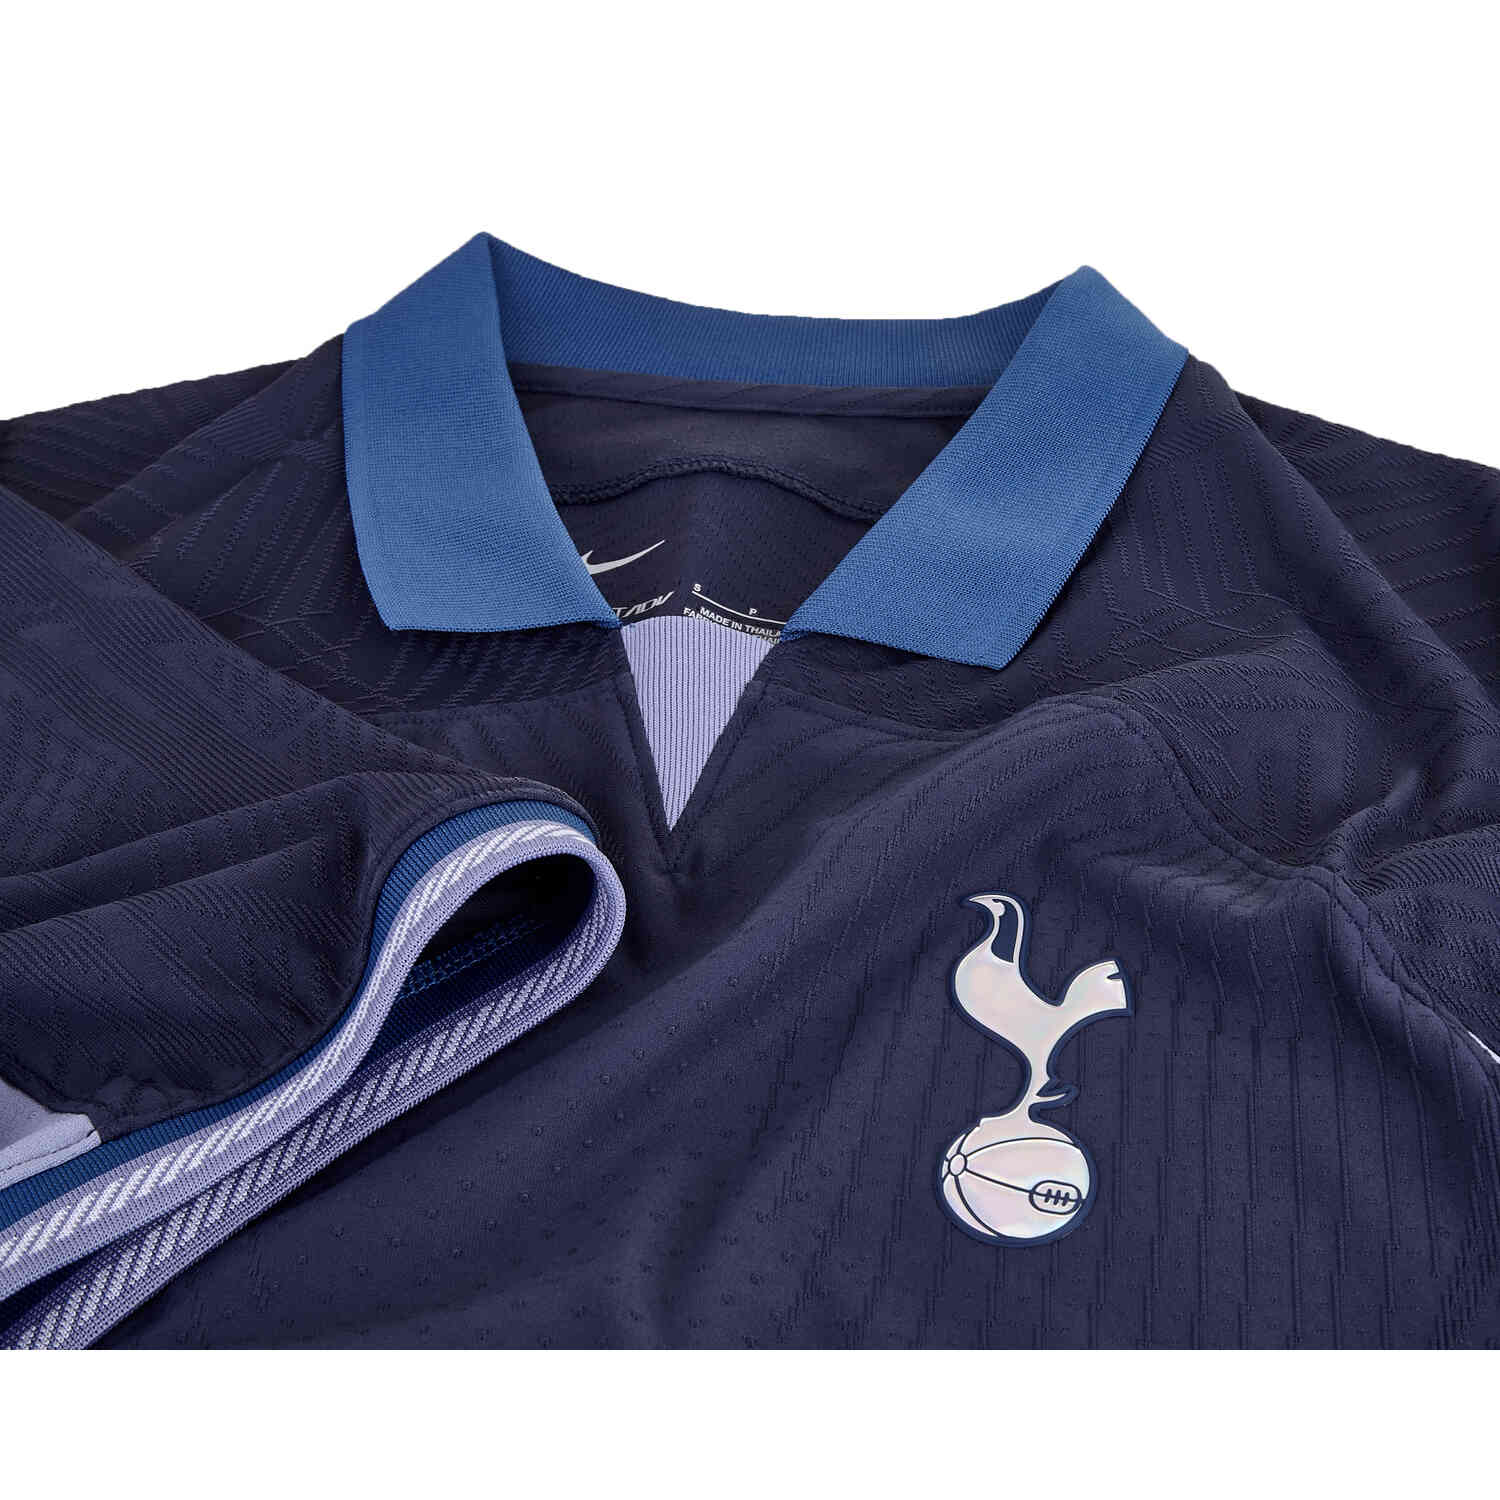 Tottenham Home Match Shirt 2023 2024